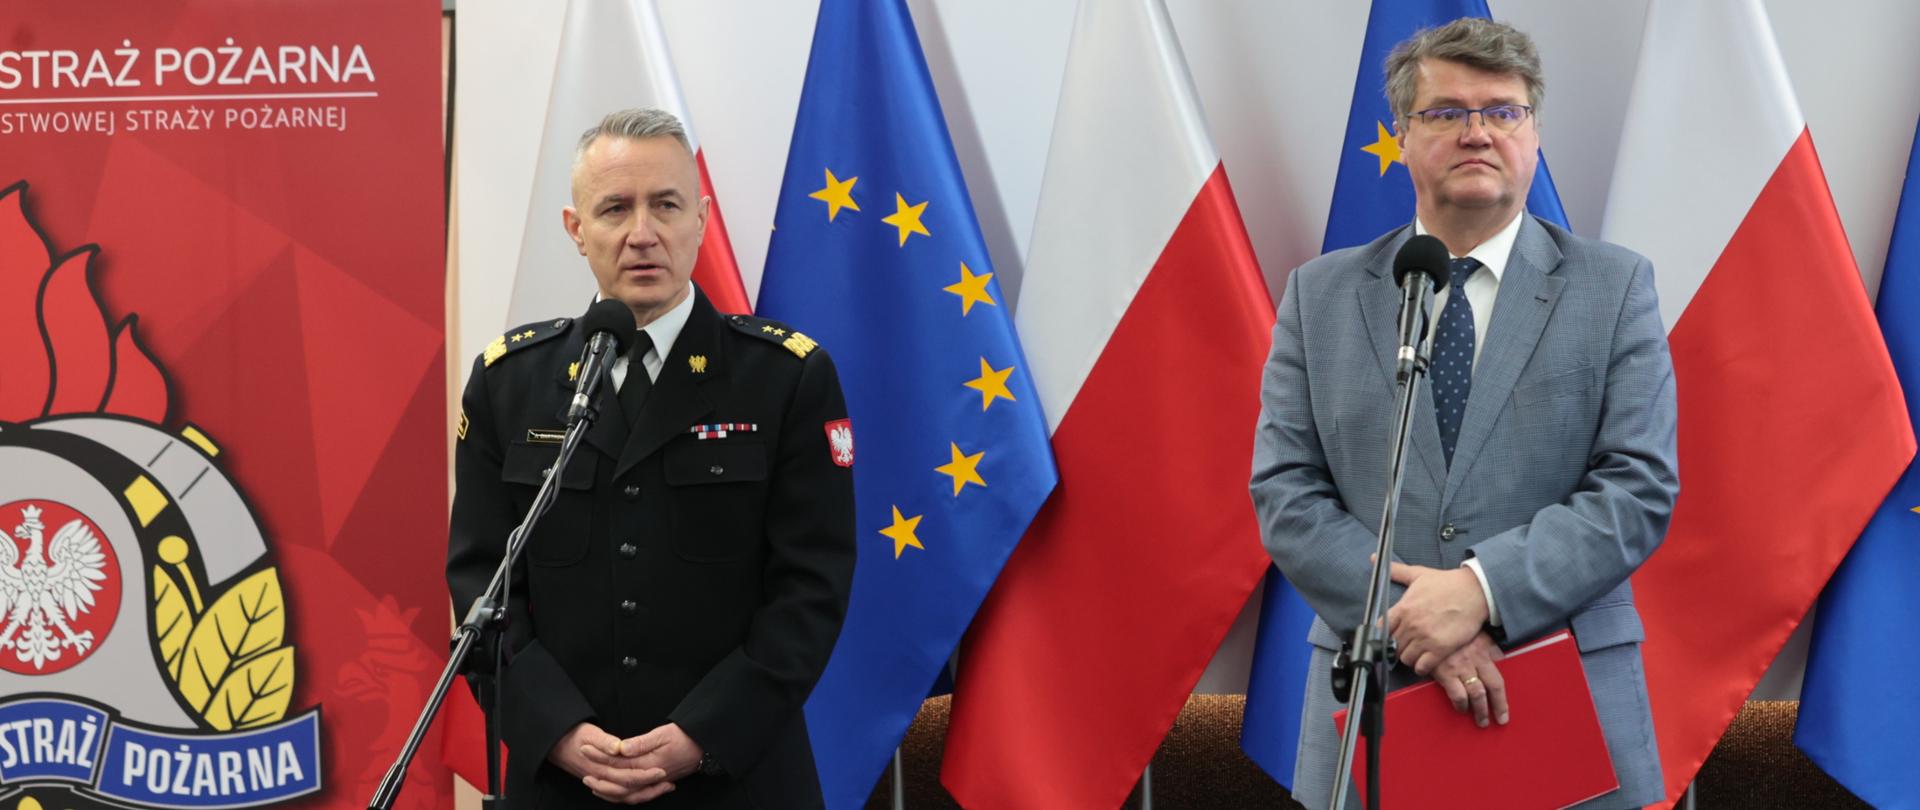 Strażak stoi przy mikrofonie w mundurze wyjściowym obok mężczyzna w garniturze trzyma czerwoną teczkę za nimi flagi Unii Europejskiej oraz Polski obok baner Komendy Głównej Państwowej Straży Pożarnej. 